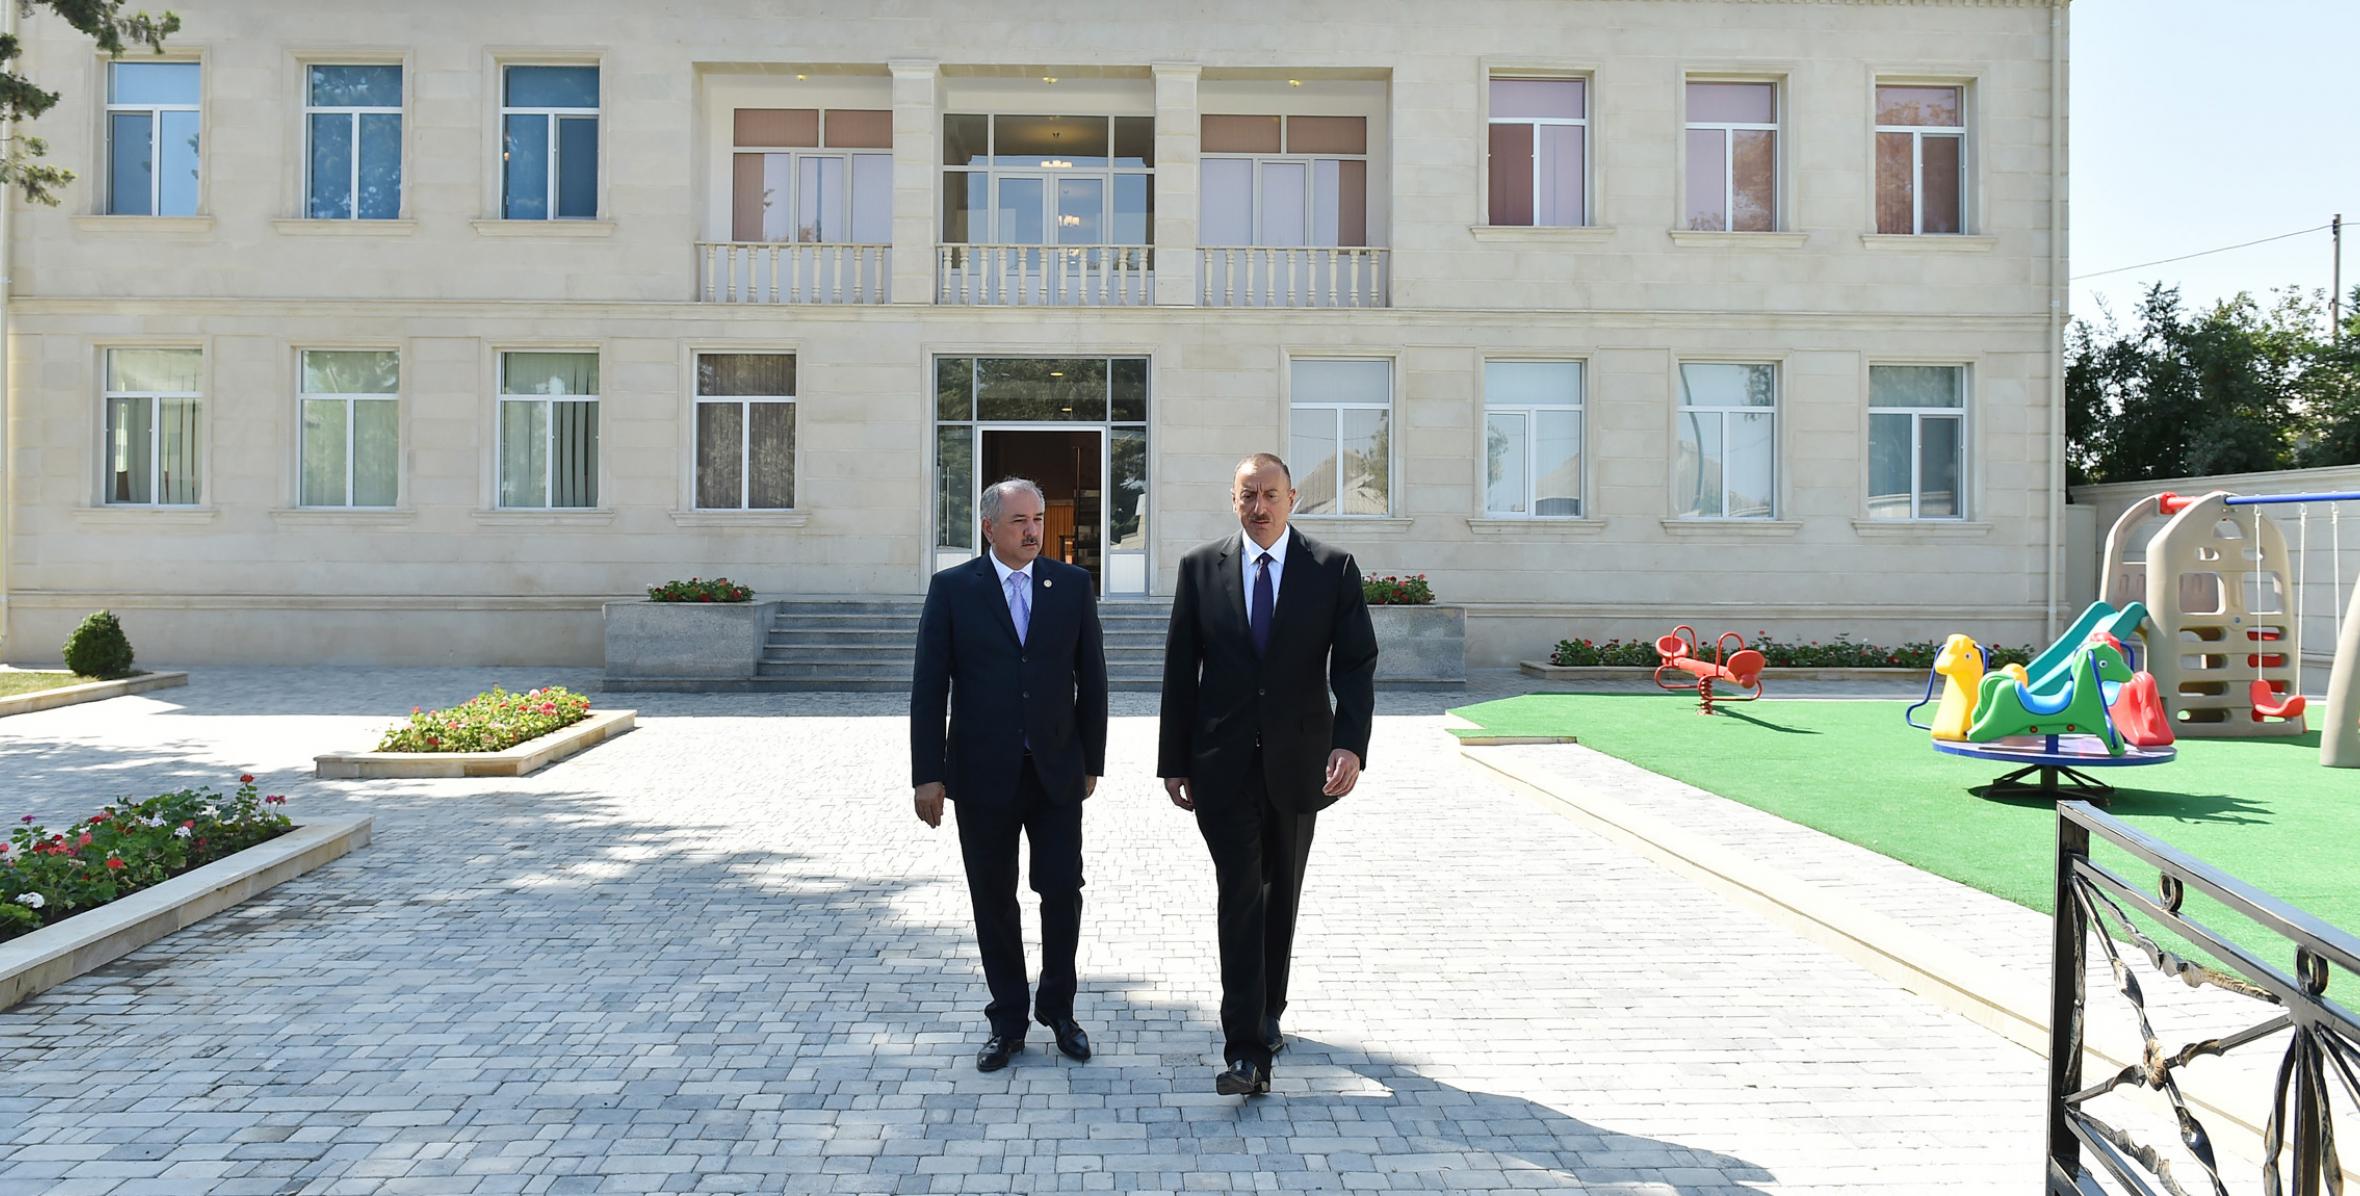 Ильхам Алиев принял участие в открытии дома младенца- детского сада, построенного в Джалилабаде по инициативе Фонда Гейдара Алиева